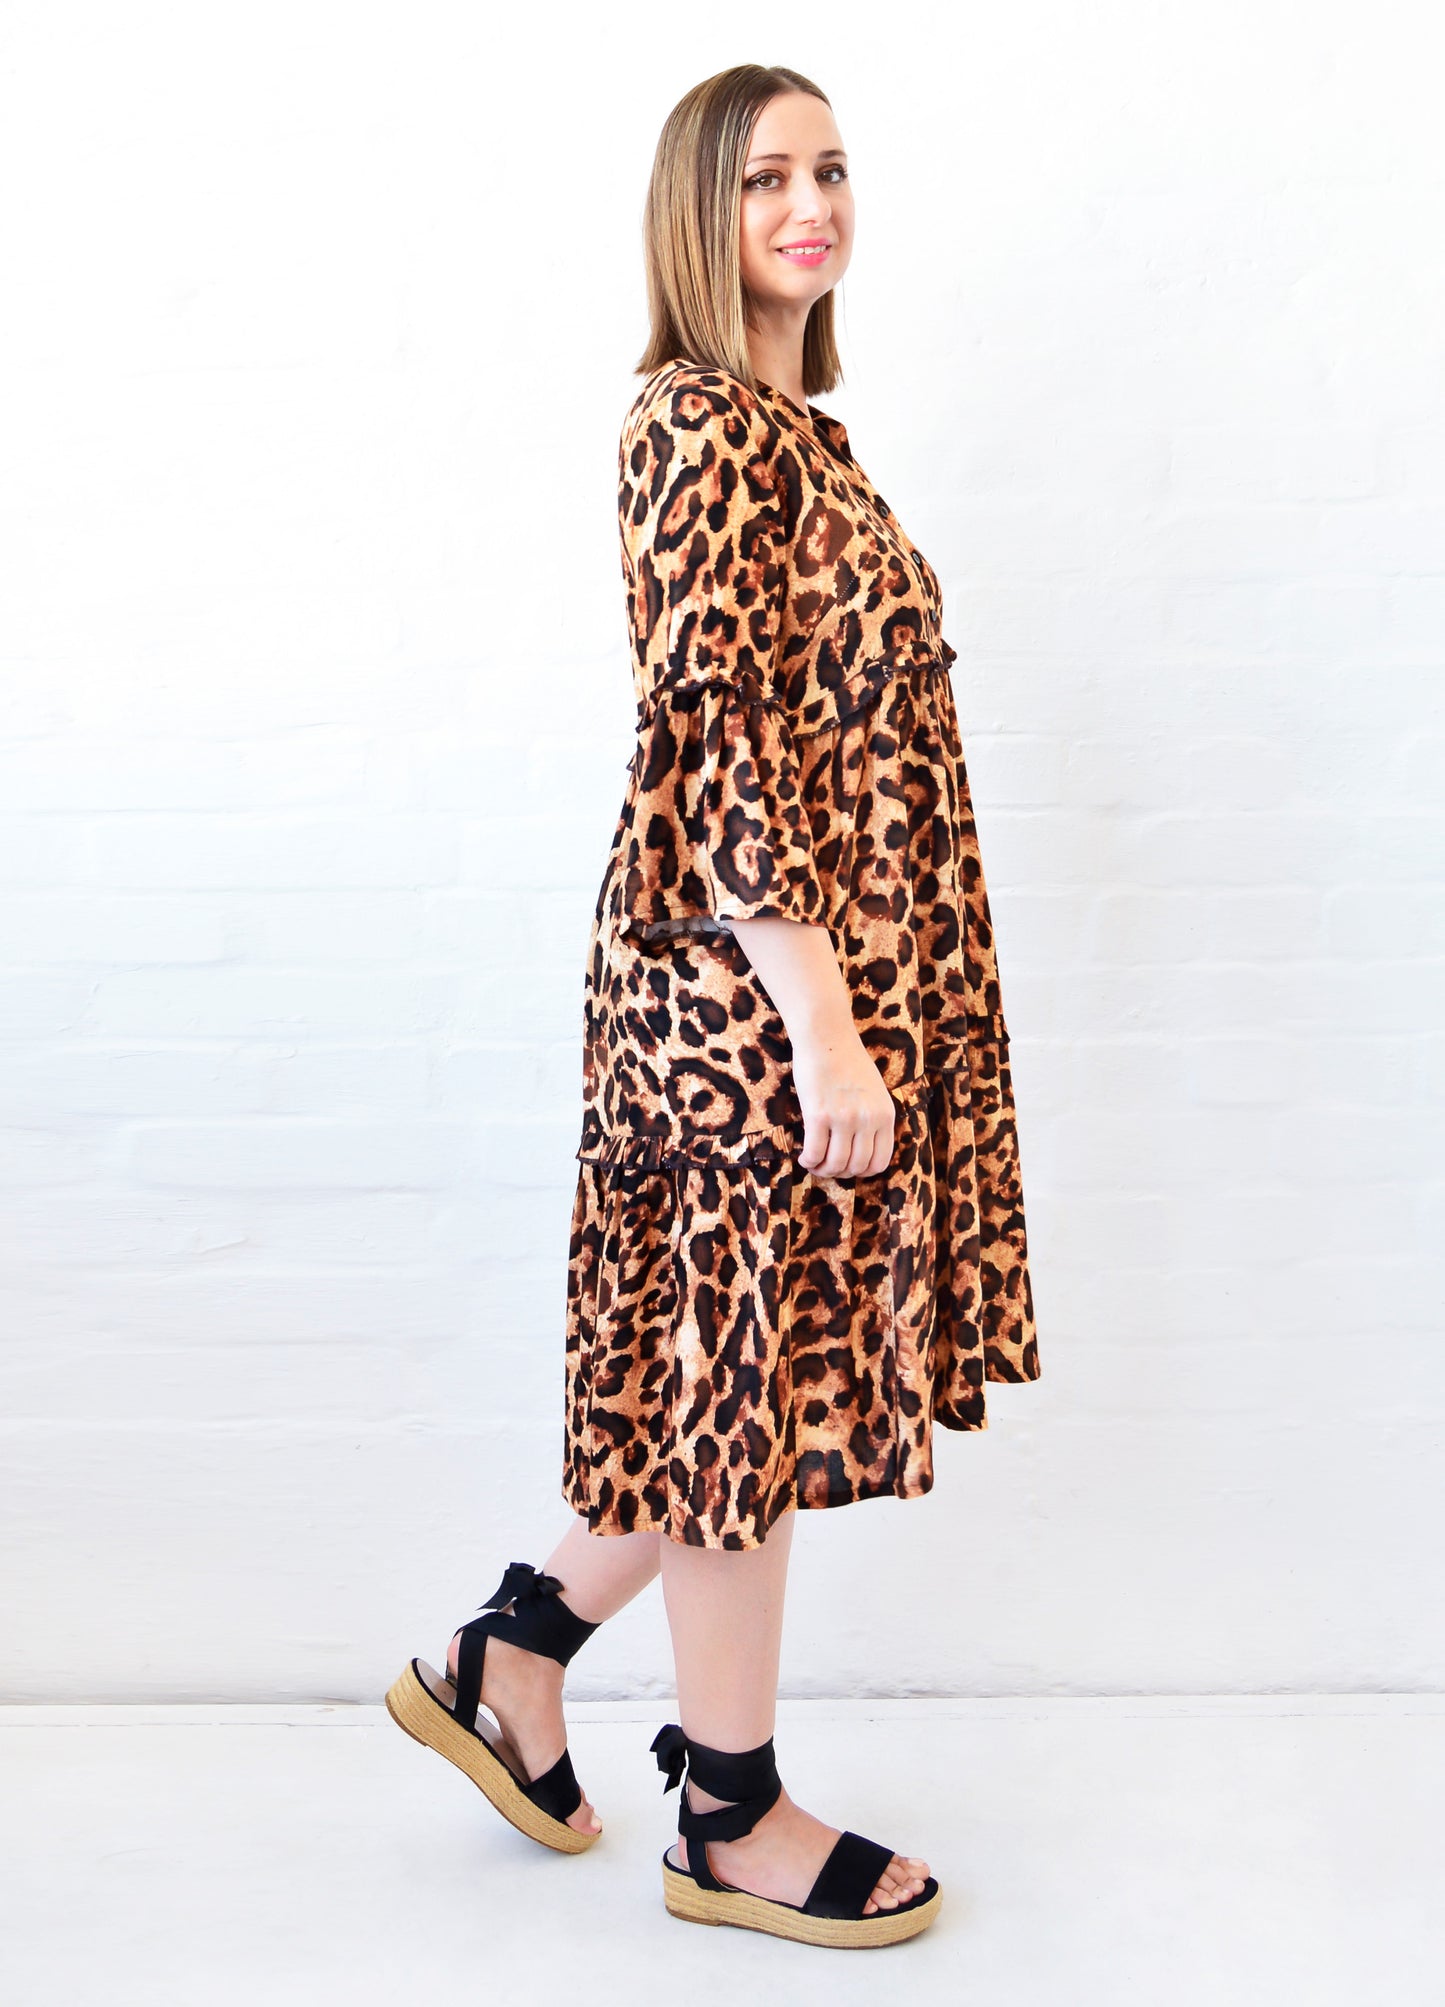 Piper Dress in coco Classic Leopard print